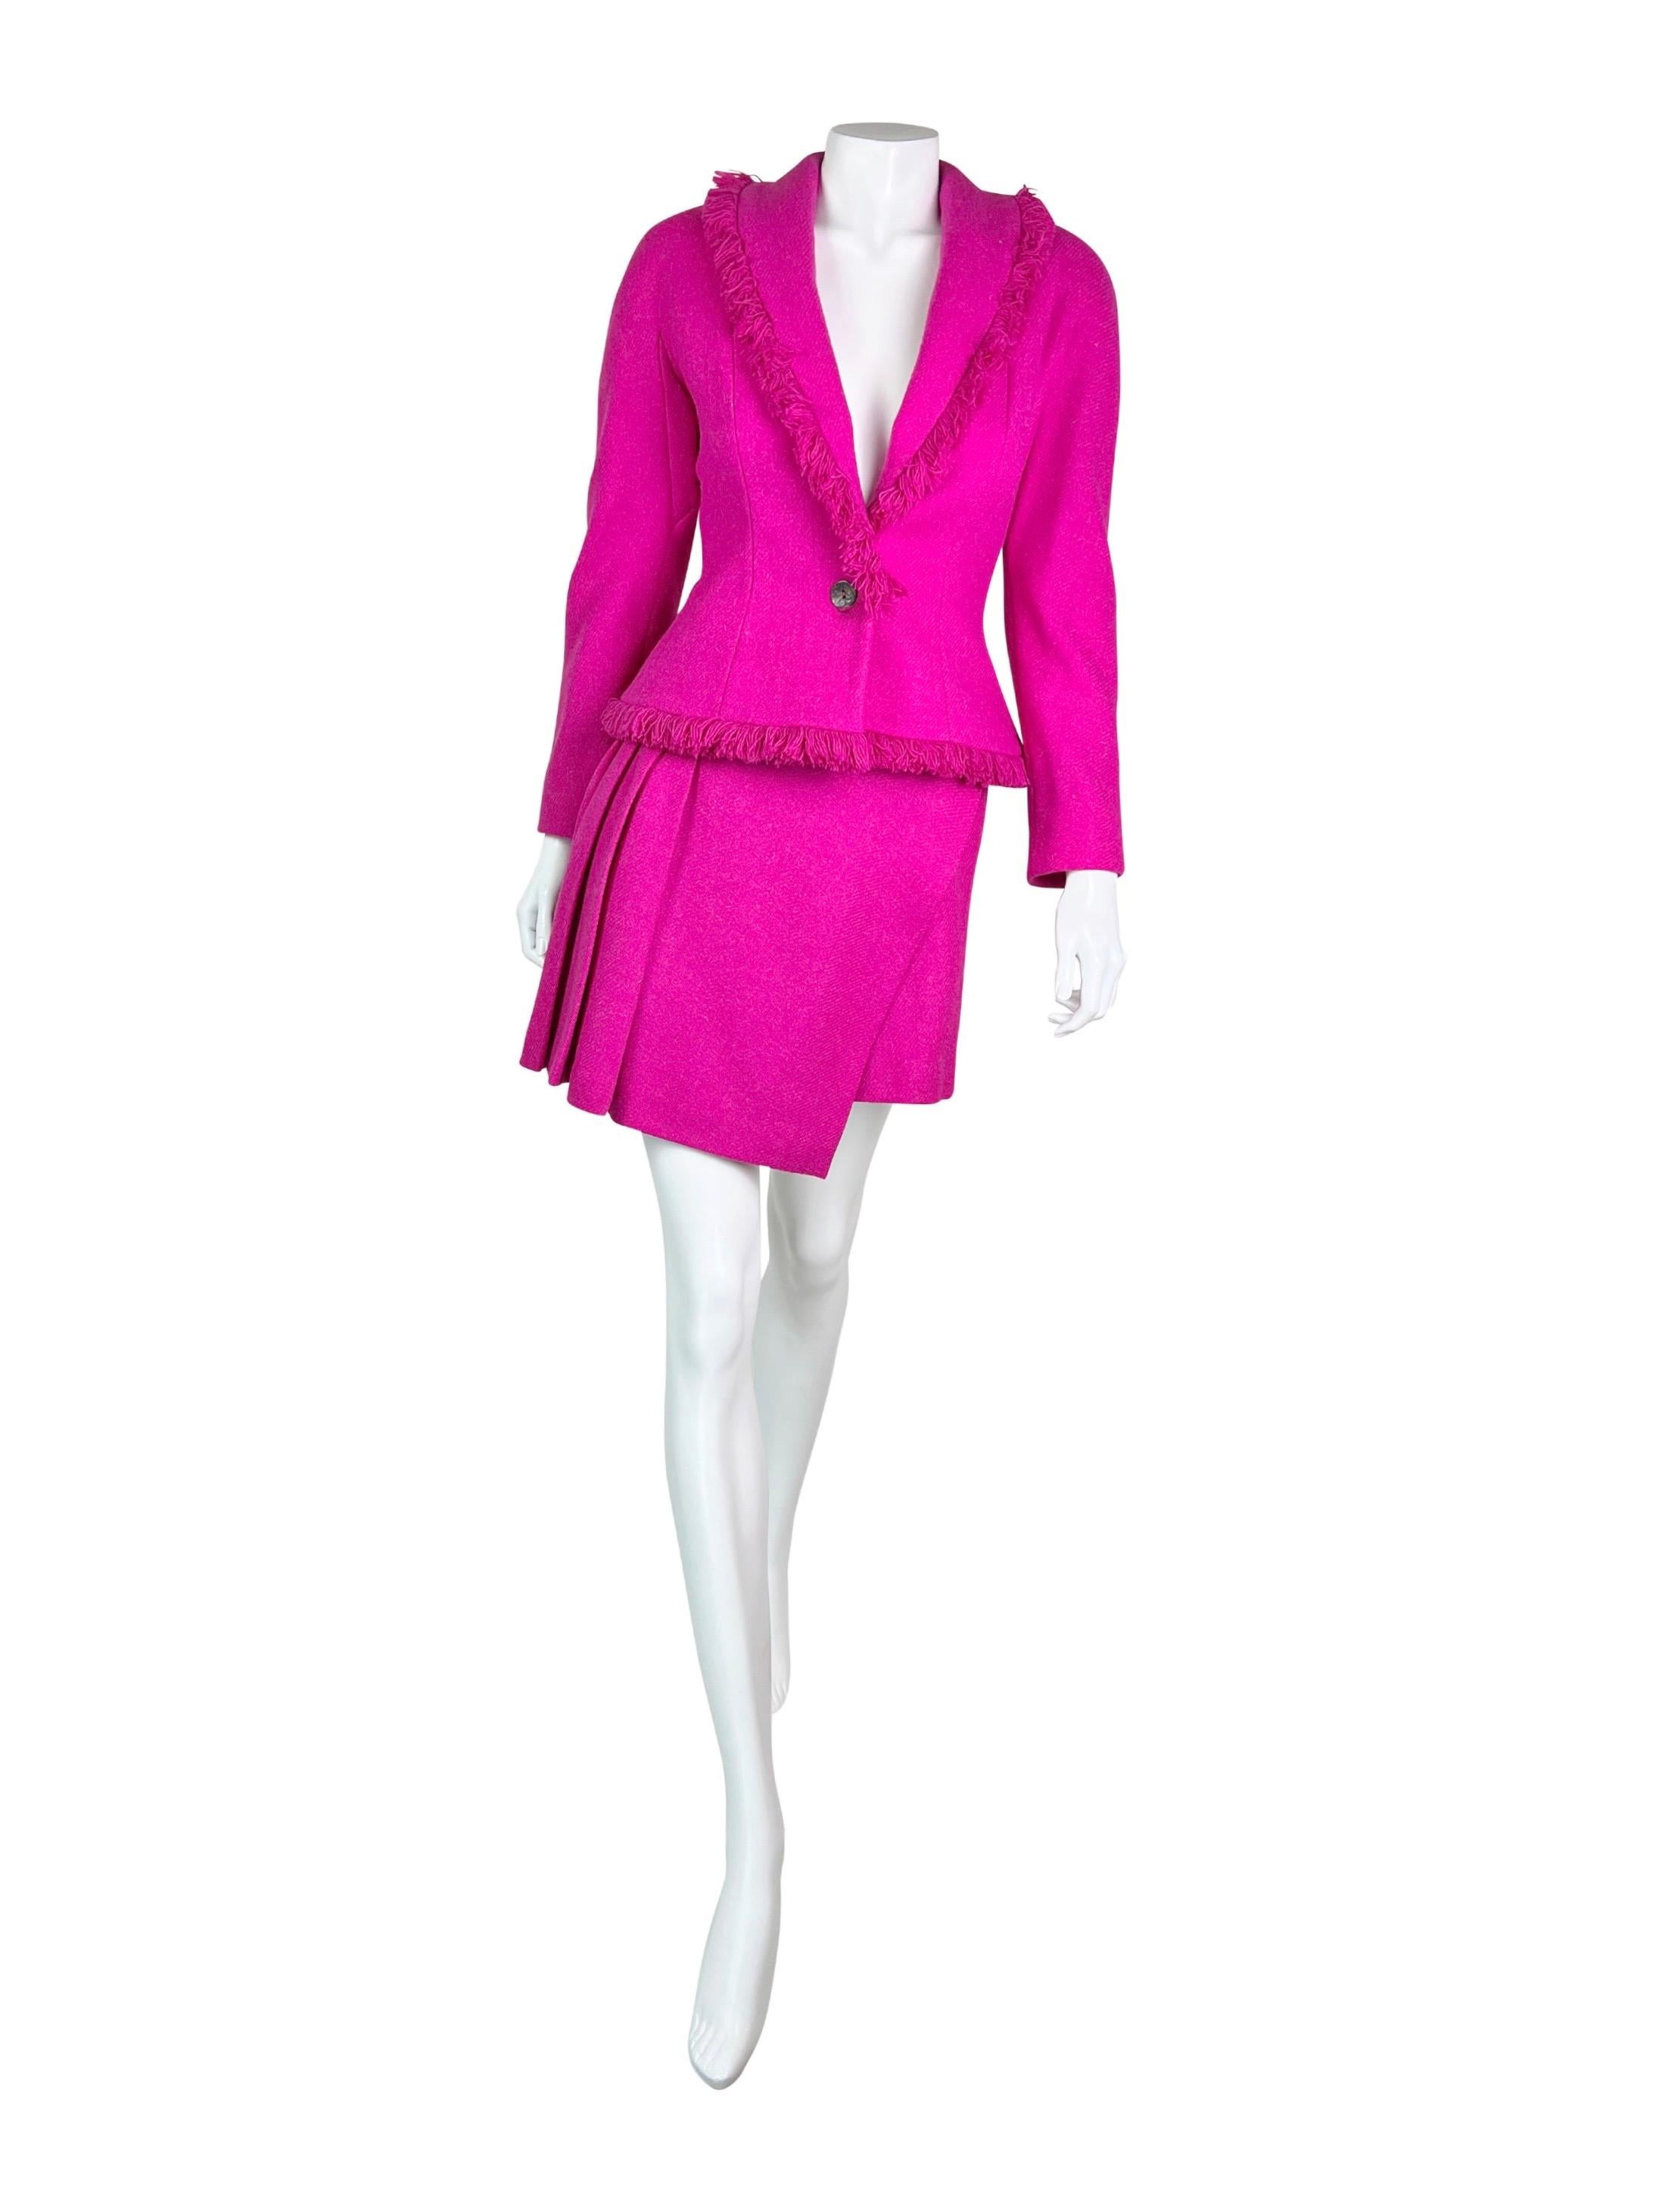 Un superbe tailleur avec une veste Dior signée Bar et une jupe asymétrique enveloppante avec des détails plissés.


Taille FR 38, ressemble à une petite taille. Mesures (à plat sur un côté) :

Longueur de la veste au niveau des épaules - 37 cm